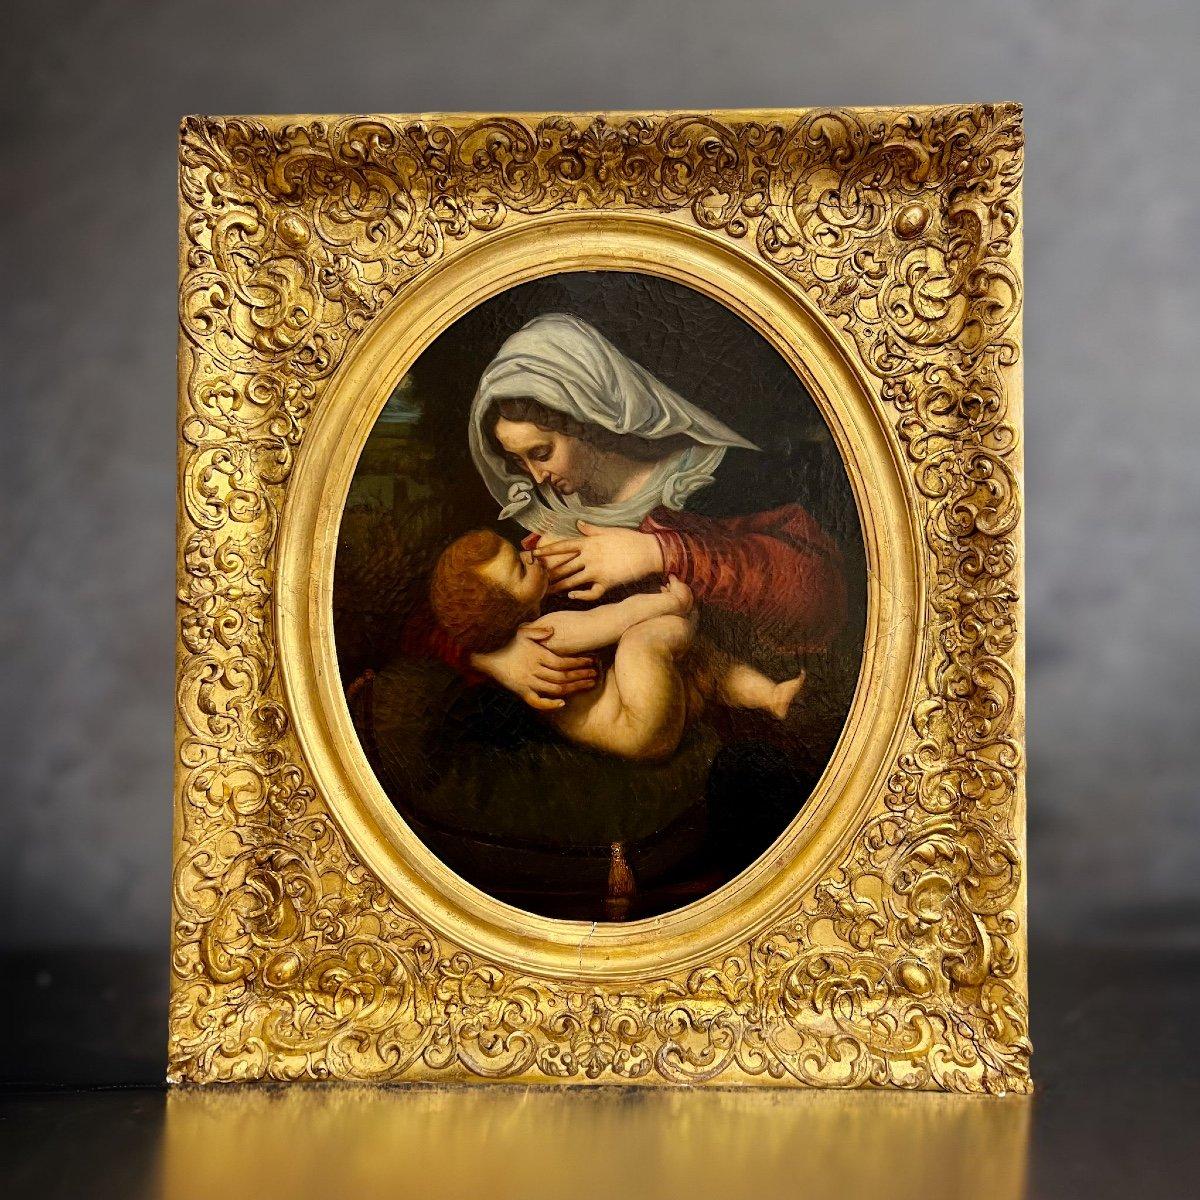 Sehr schönes Ölgemälde der Jungfrau mit Kind aus dem 19. Jahrhundert, Öl auf Leinwand, in einem massiven geschnitzten und vergoldeten Holzrahmen. 
Das Gemälde ist der französischen Schule zuzuordnen, wahrscheinlich inspiriert durch ein ähnliches